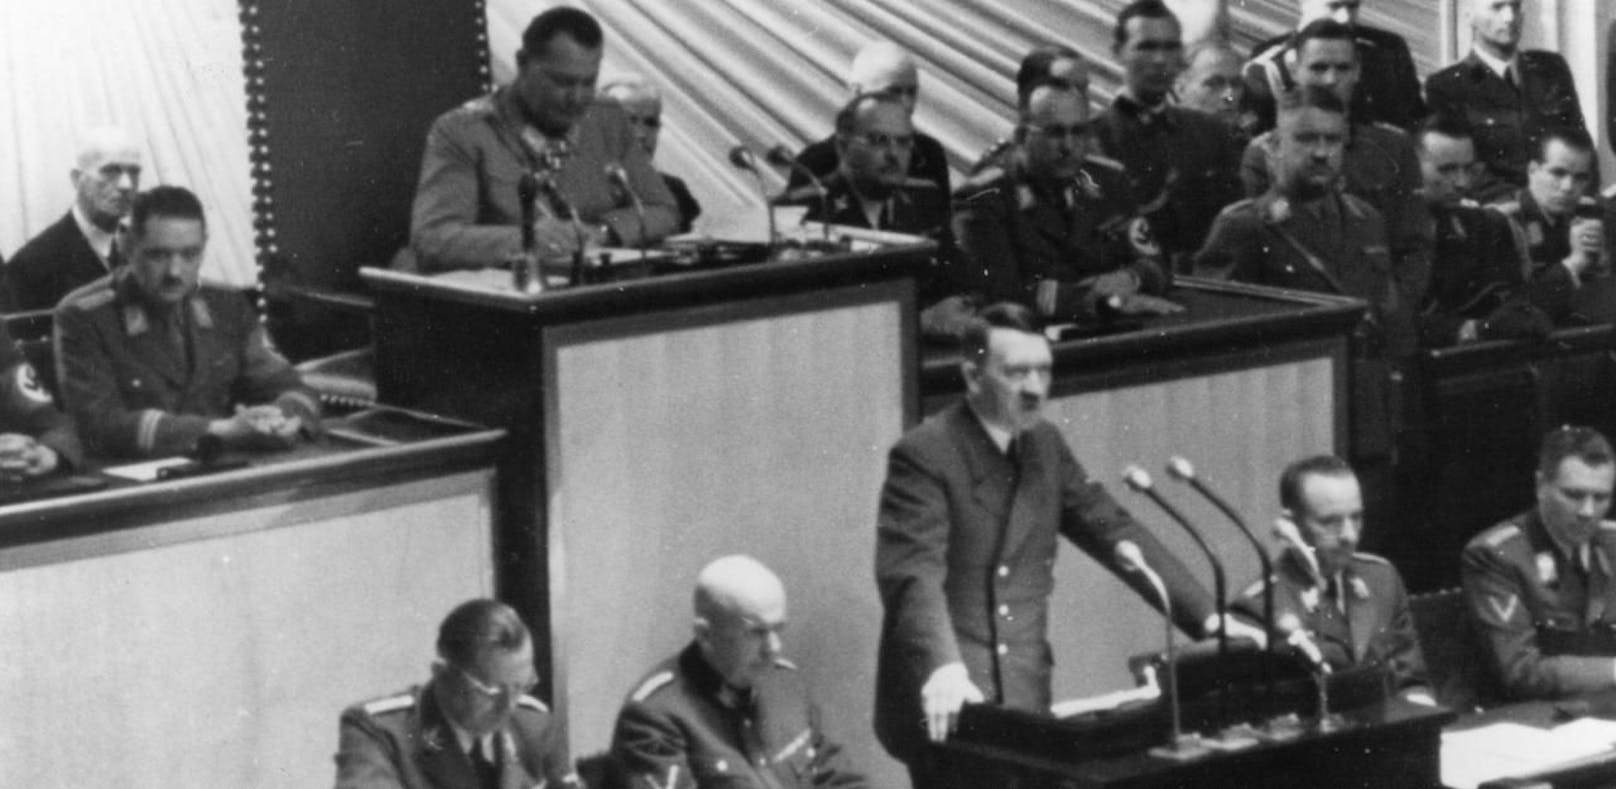 Der FPÖ-Politiker soll Bilder verbreitet haben, in die sein Kopf neben Adolf Hitler montiert wurde (Symbolbild)